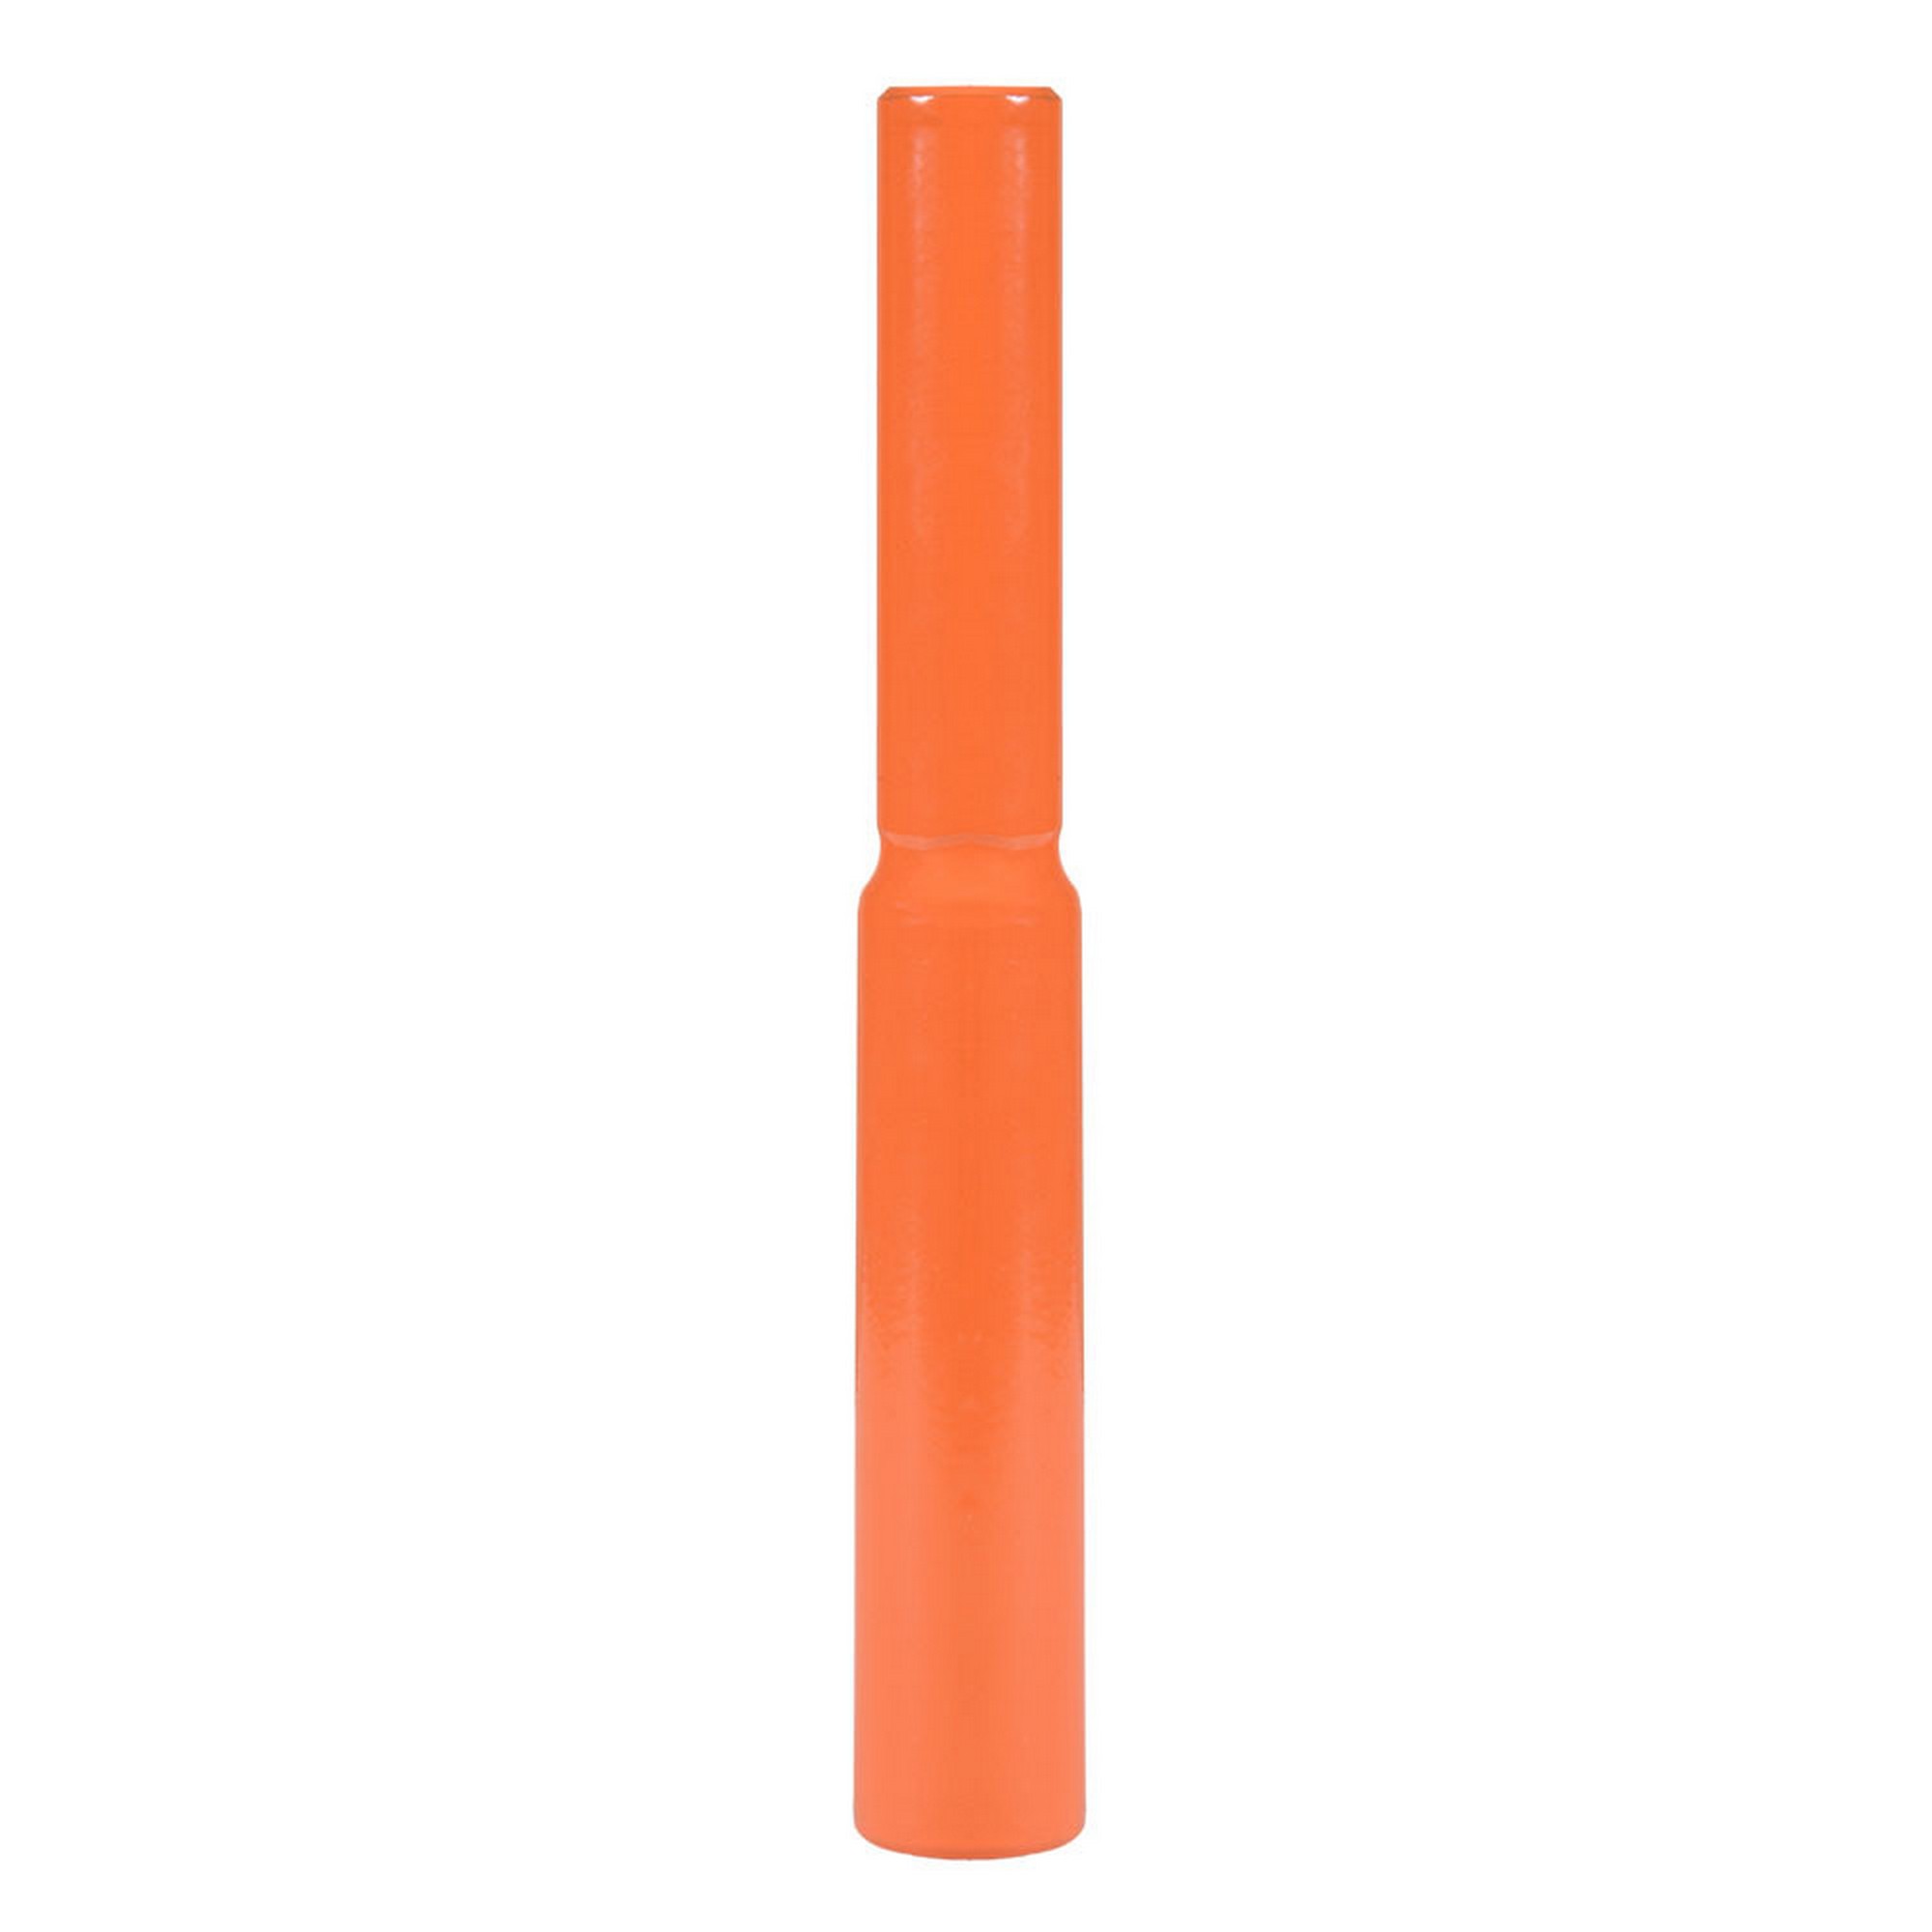 Граната металлическая для метания 700 г, 25 см, металл S0000072191 оранжевый 2000_2000